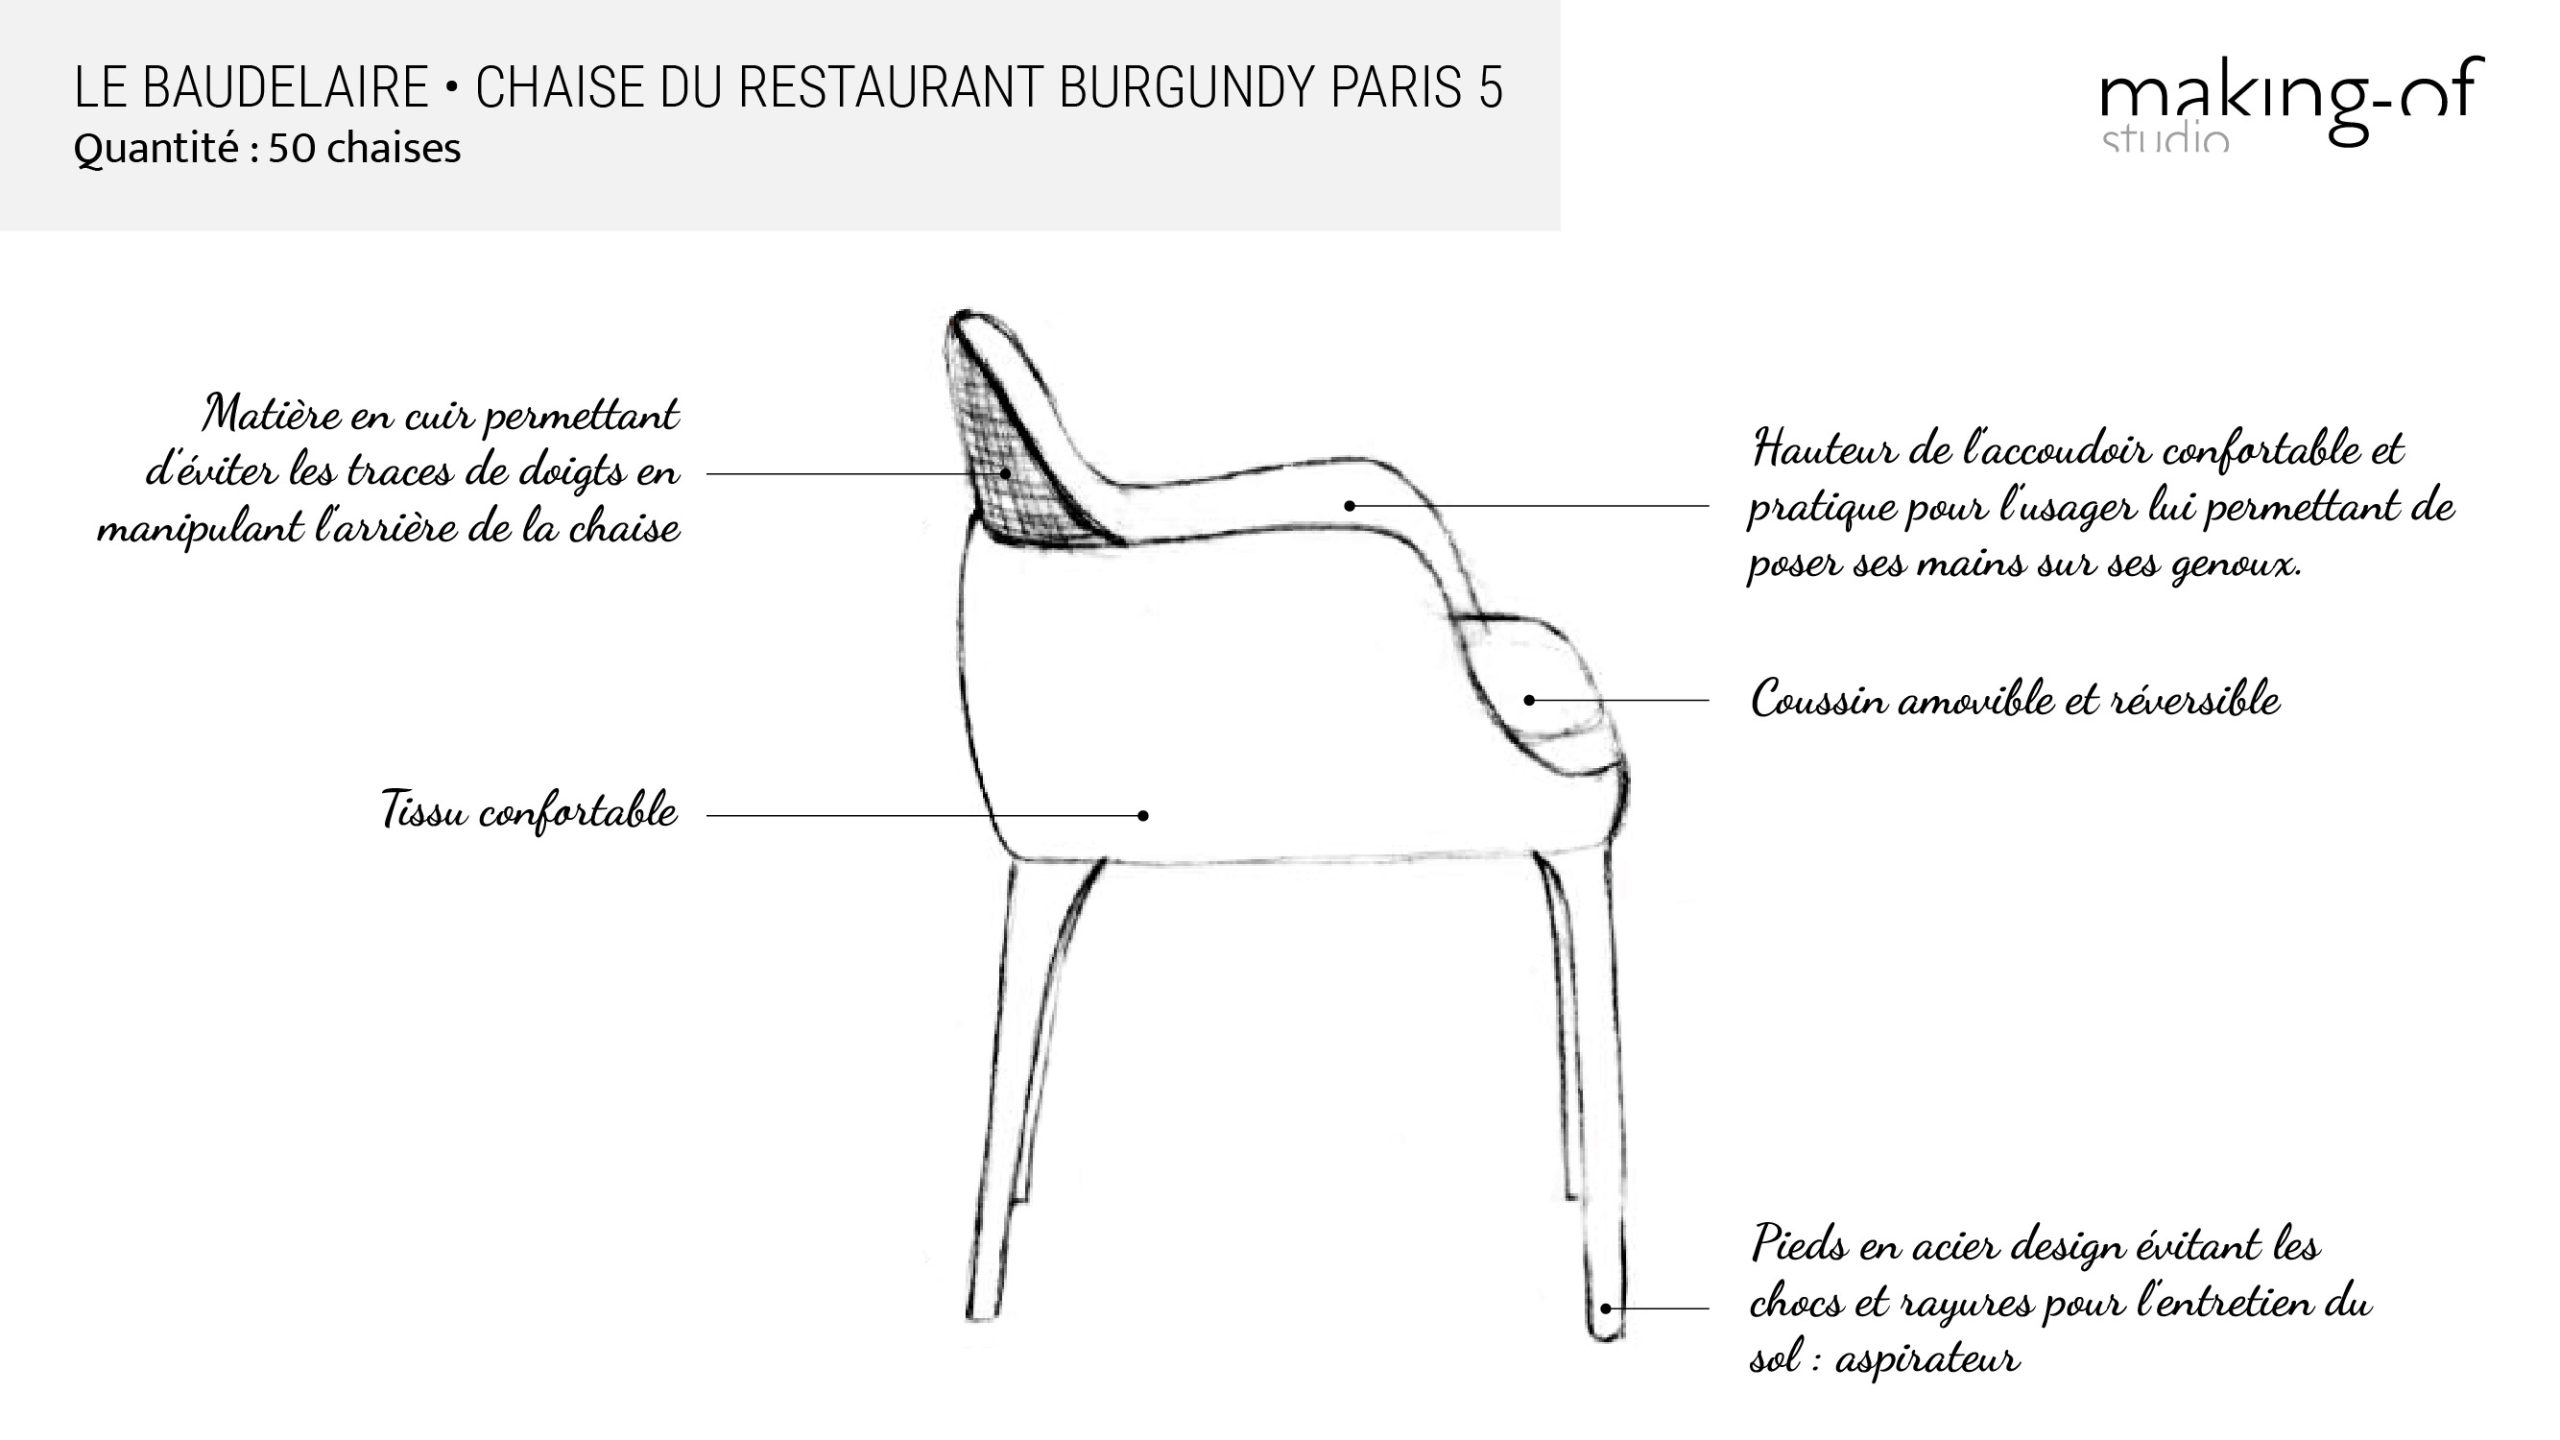 Détails du croquis de la chaise du restaurant Le Baudelaire